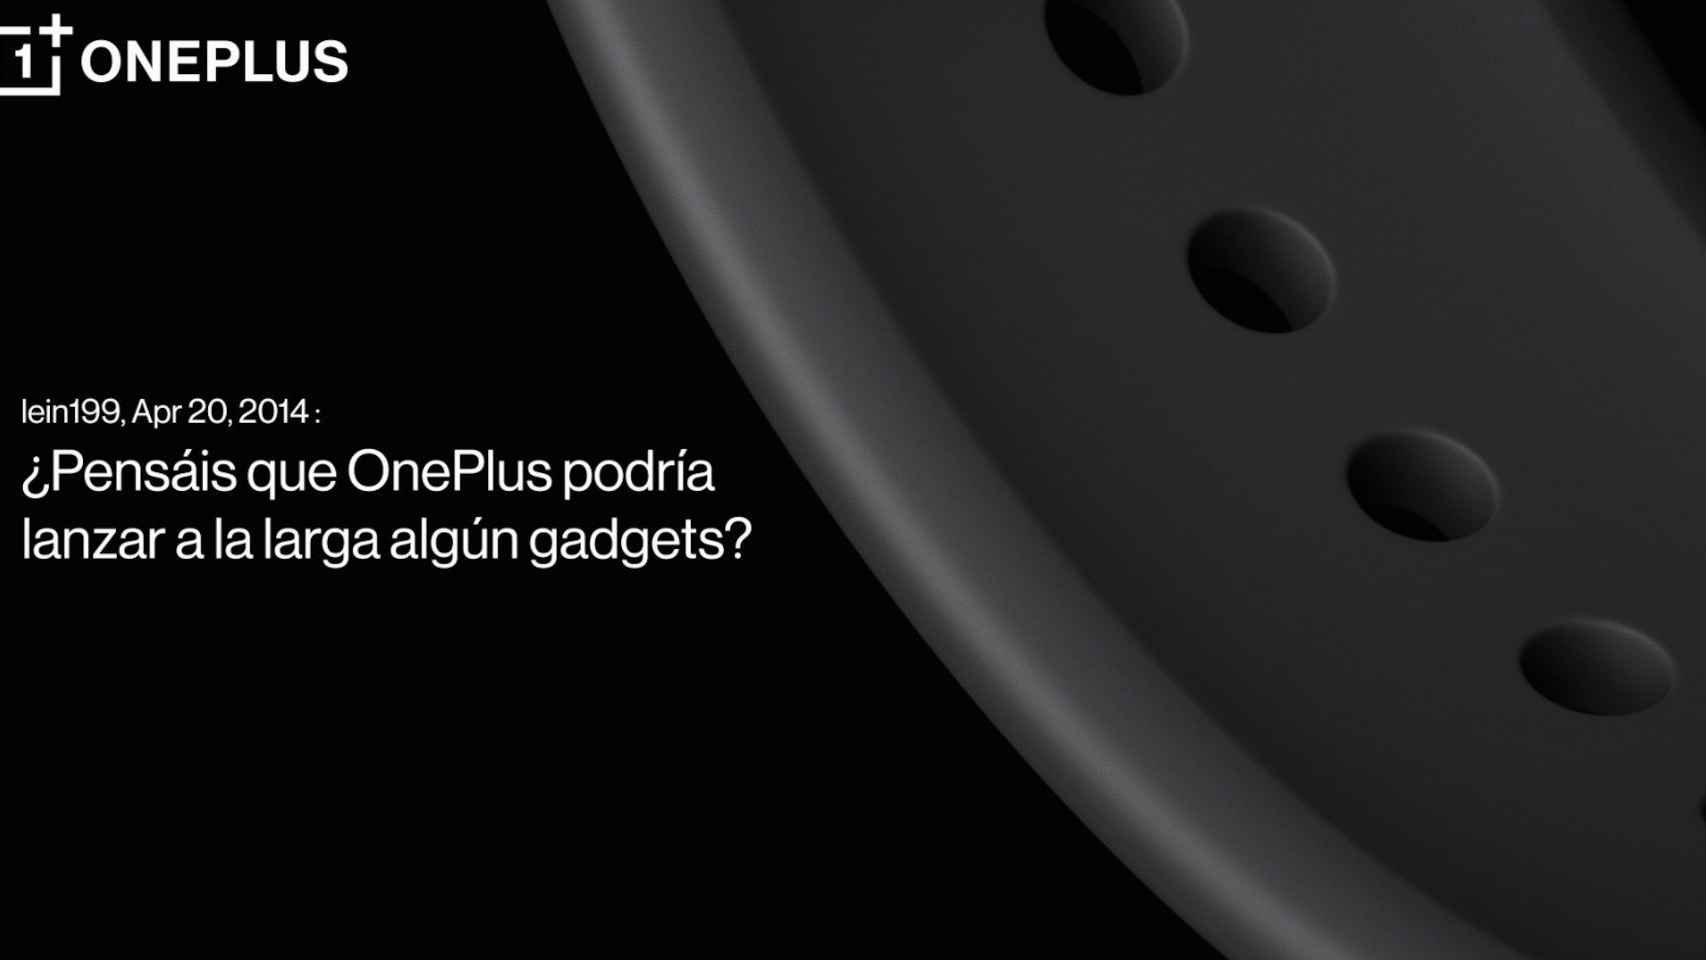 La correa del nuevo reloj de OnePlus